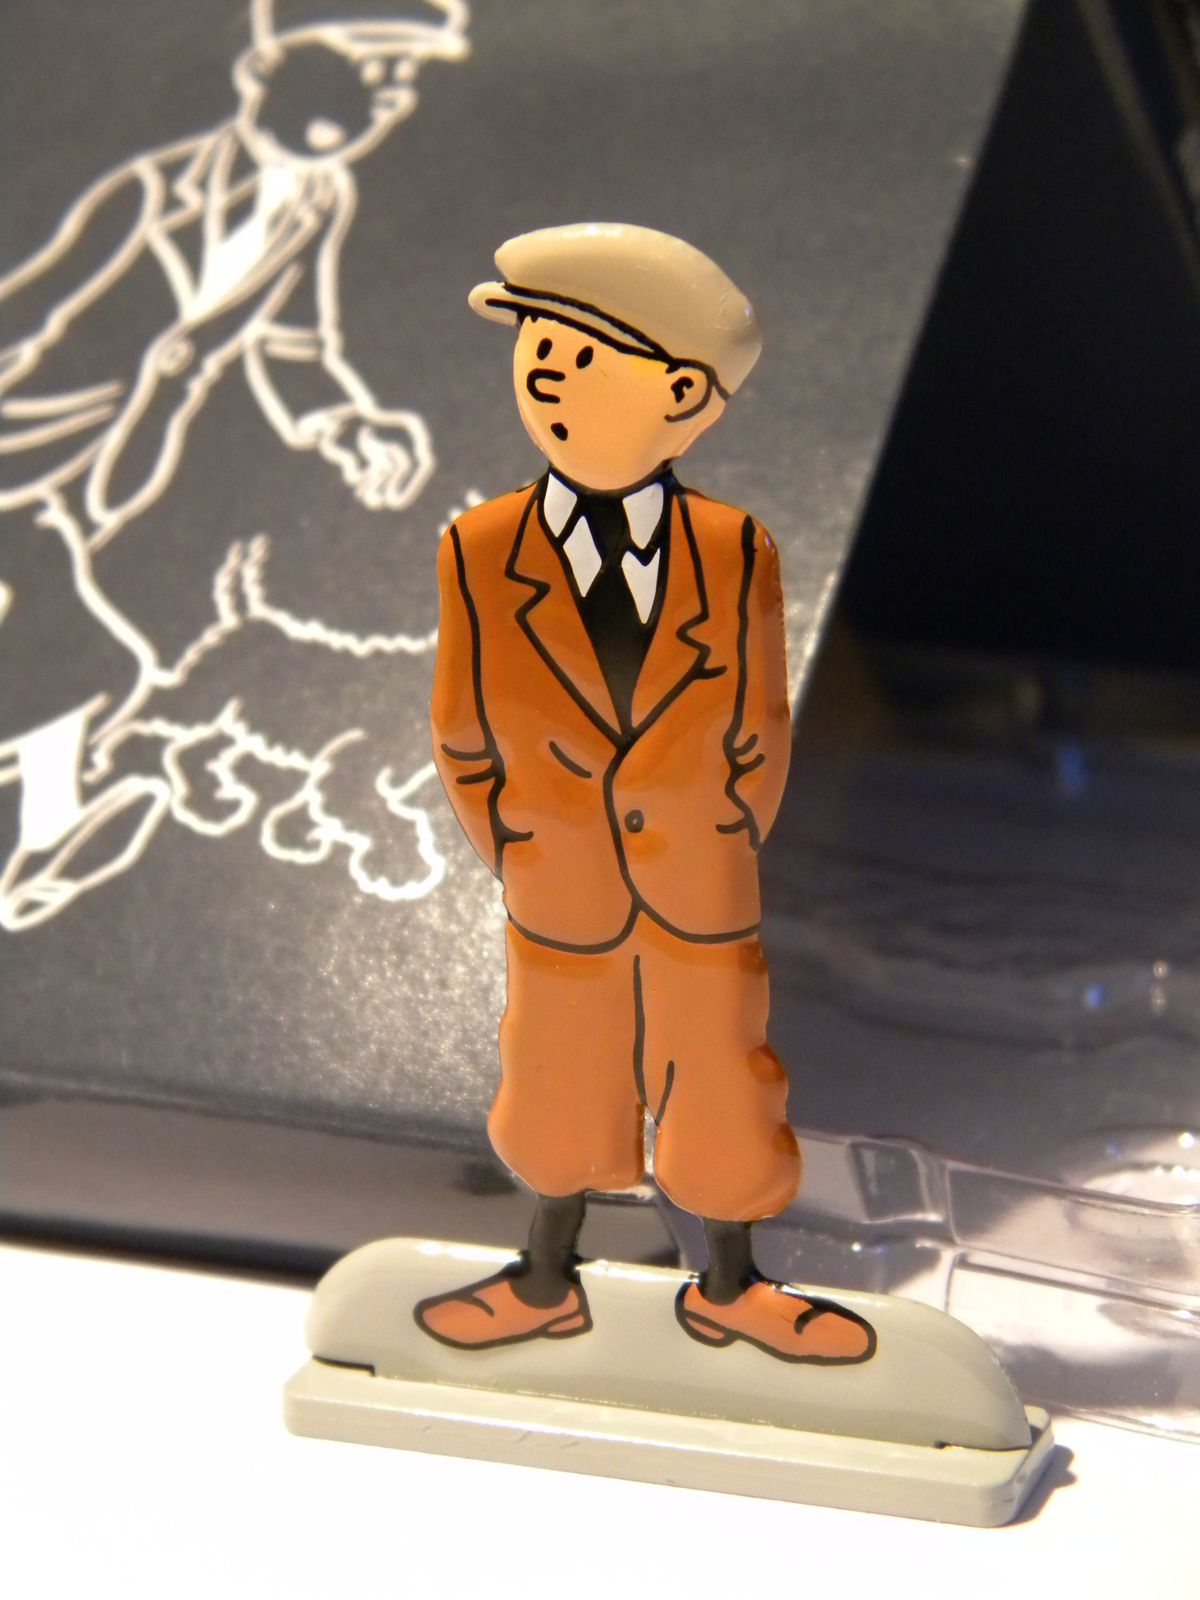 Figurine en métal de collection Tintin marche sur un pétard 29209 (2010)